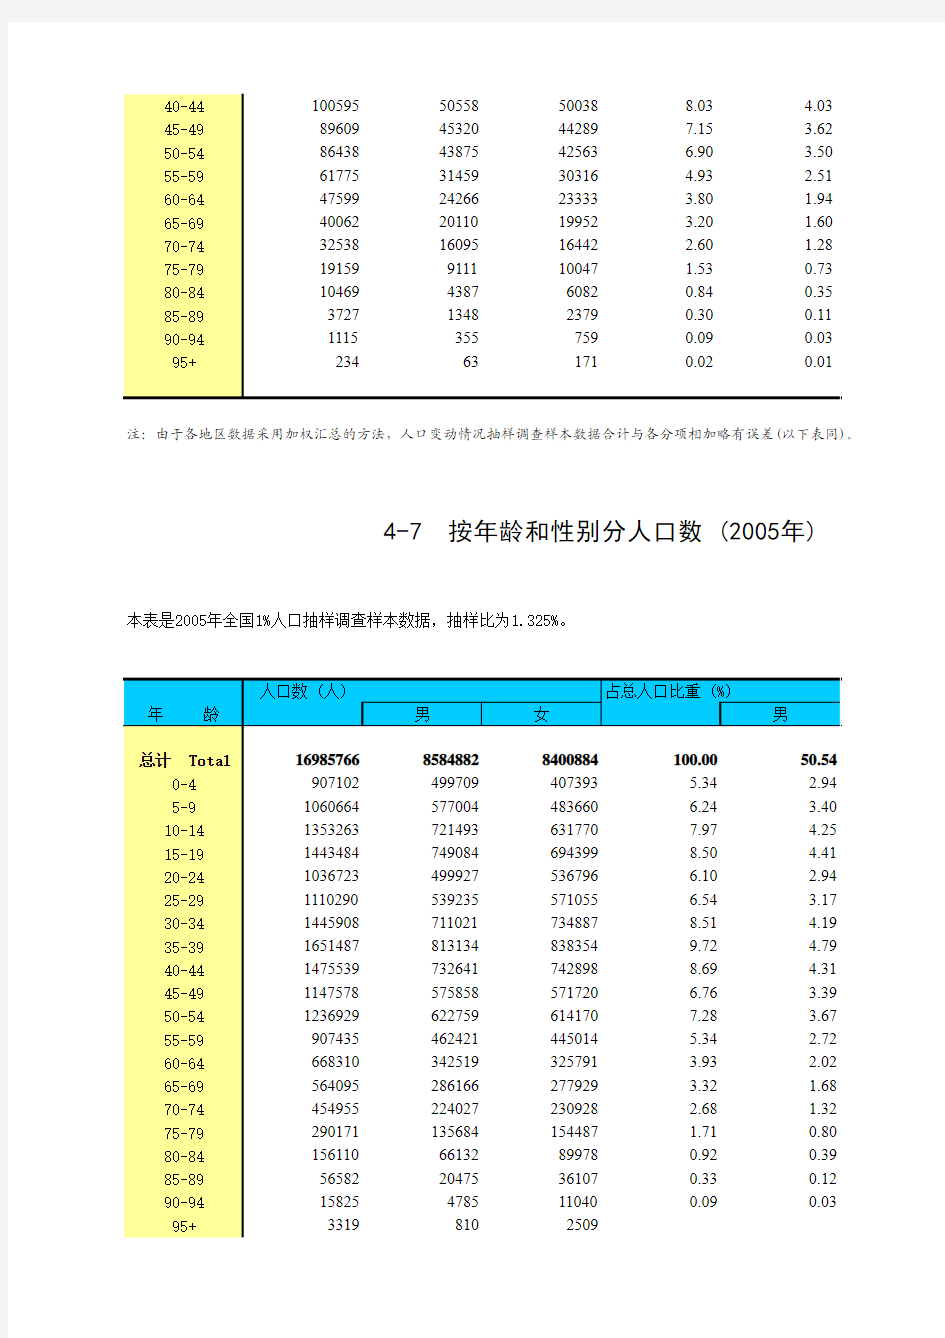 历年来中国各年龄段人口比例_数量_中国人口生命表